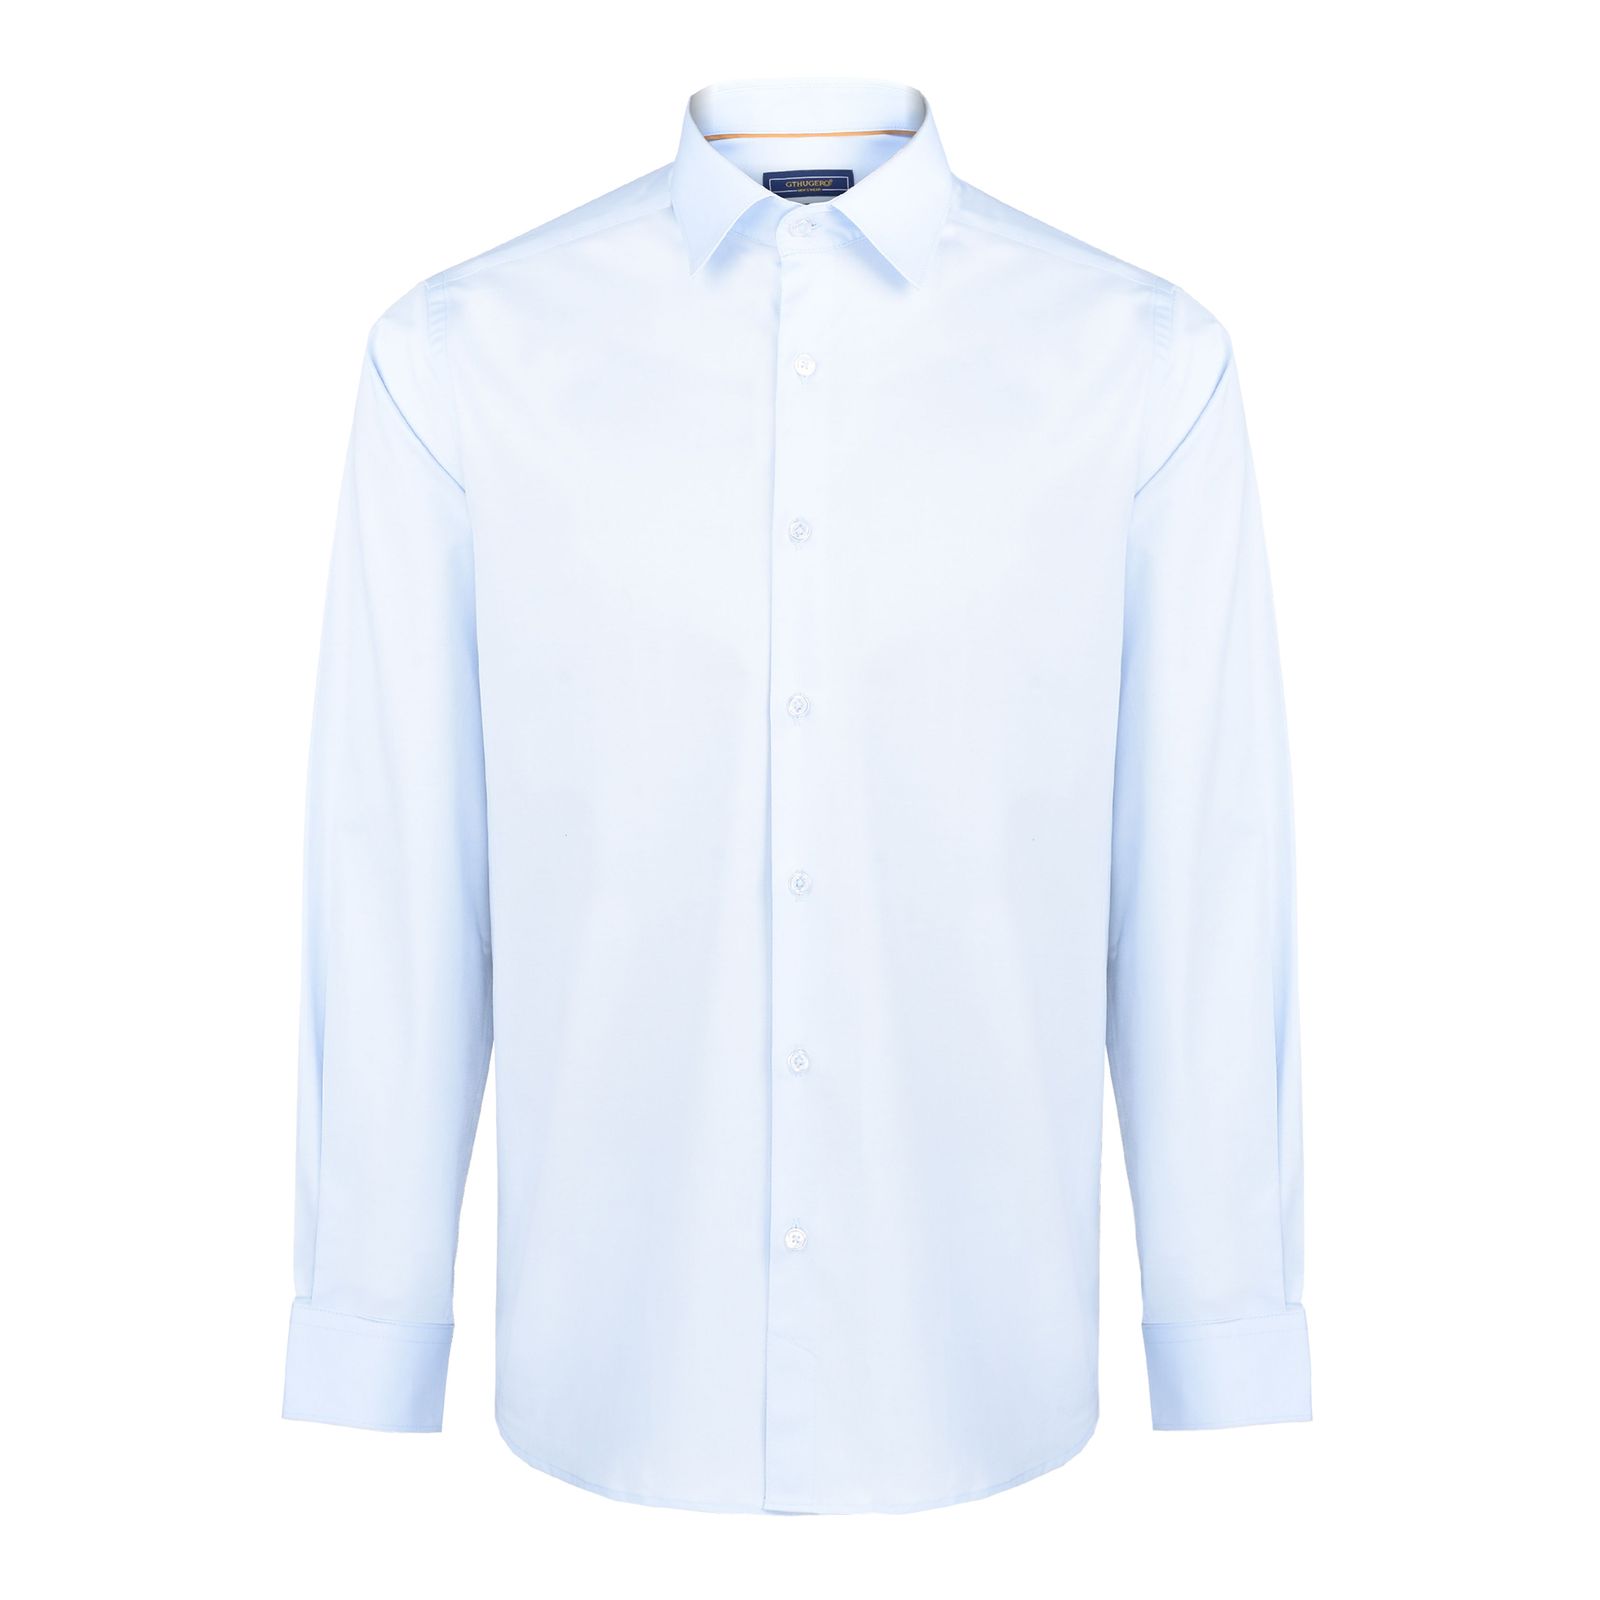 پیراهن آستین بلند مردانه جی تی هوگرو مدل 1021016 -  - 1